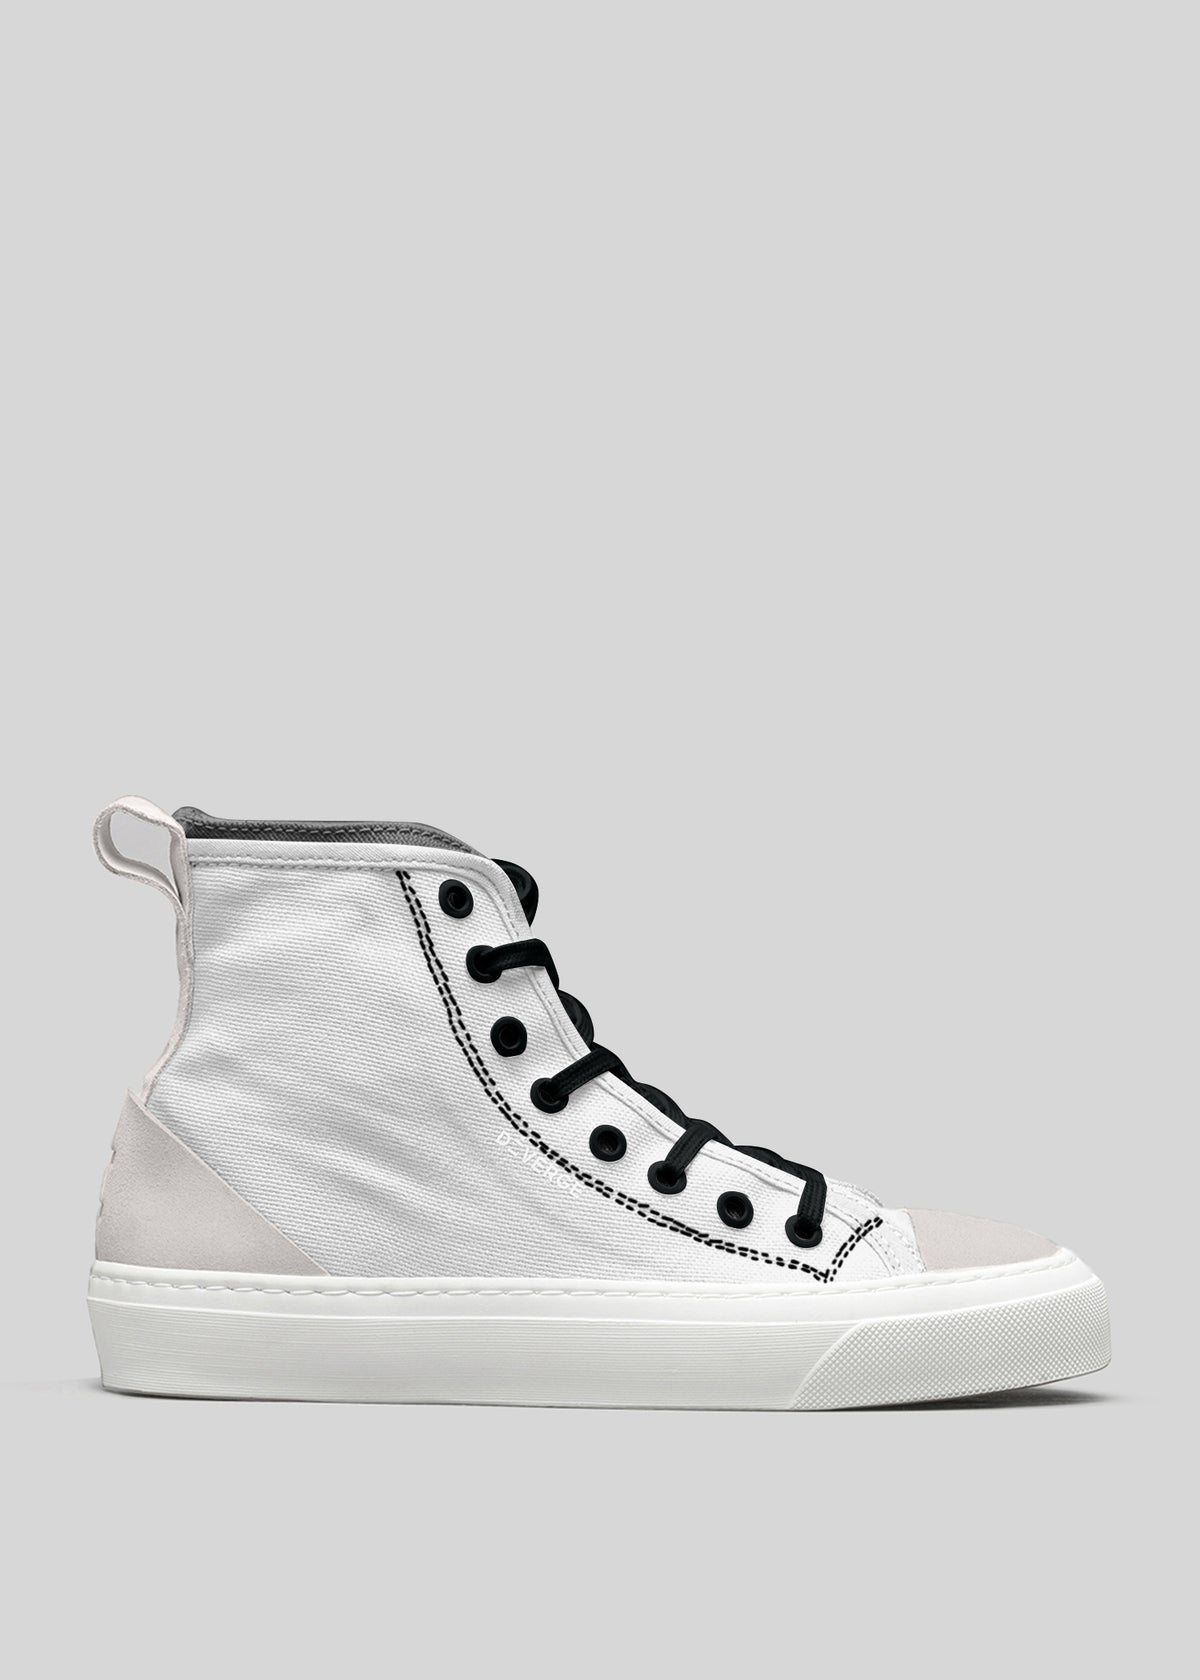 TH0004 von Martim High-Top-Sneaker aus Canvas mit schwarzen Schnürsenkeln und weißer Gummisohle auf grauem Hintergrund.